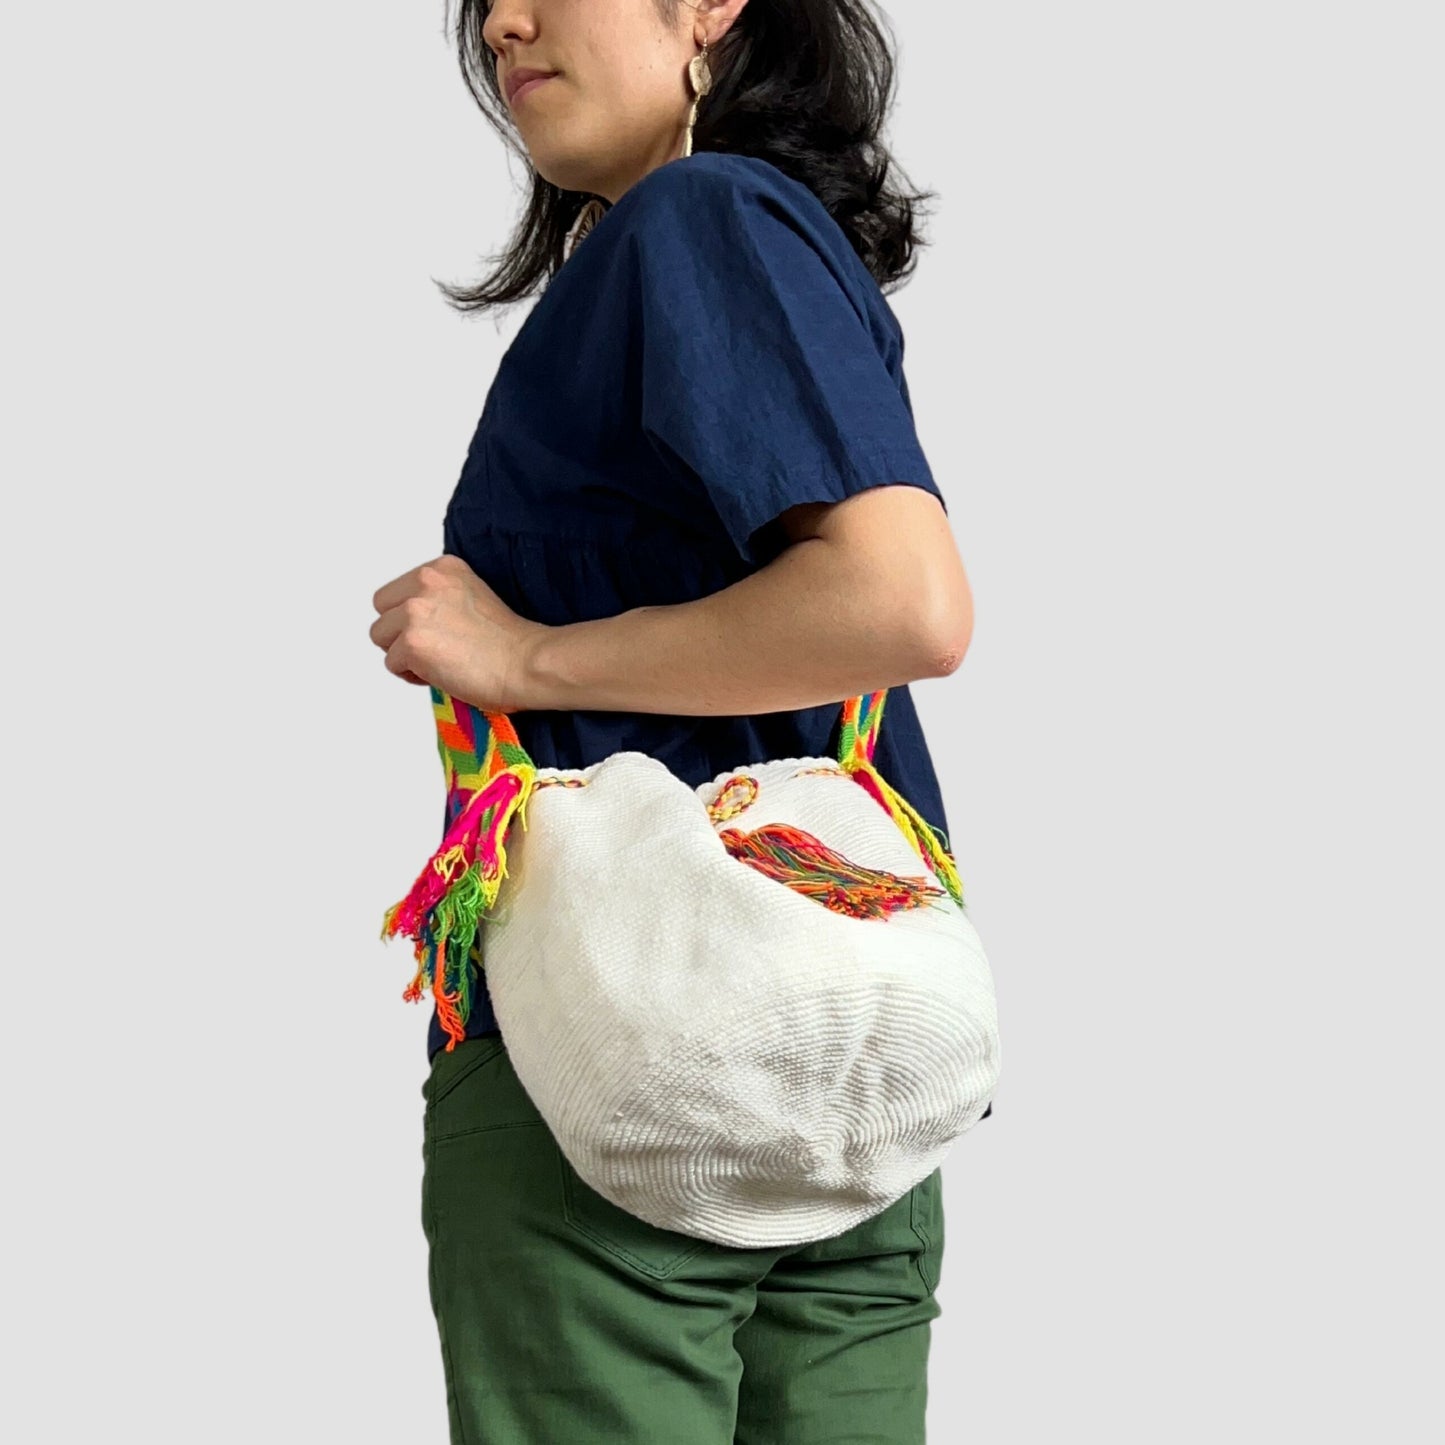 White & Bright Wayúu Style Bag